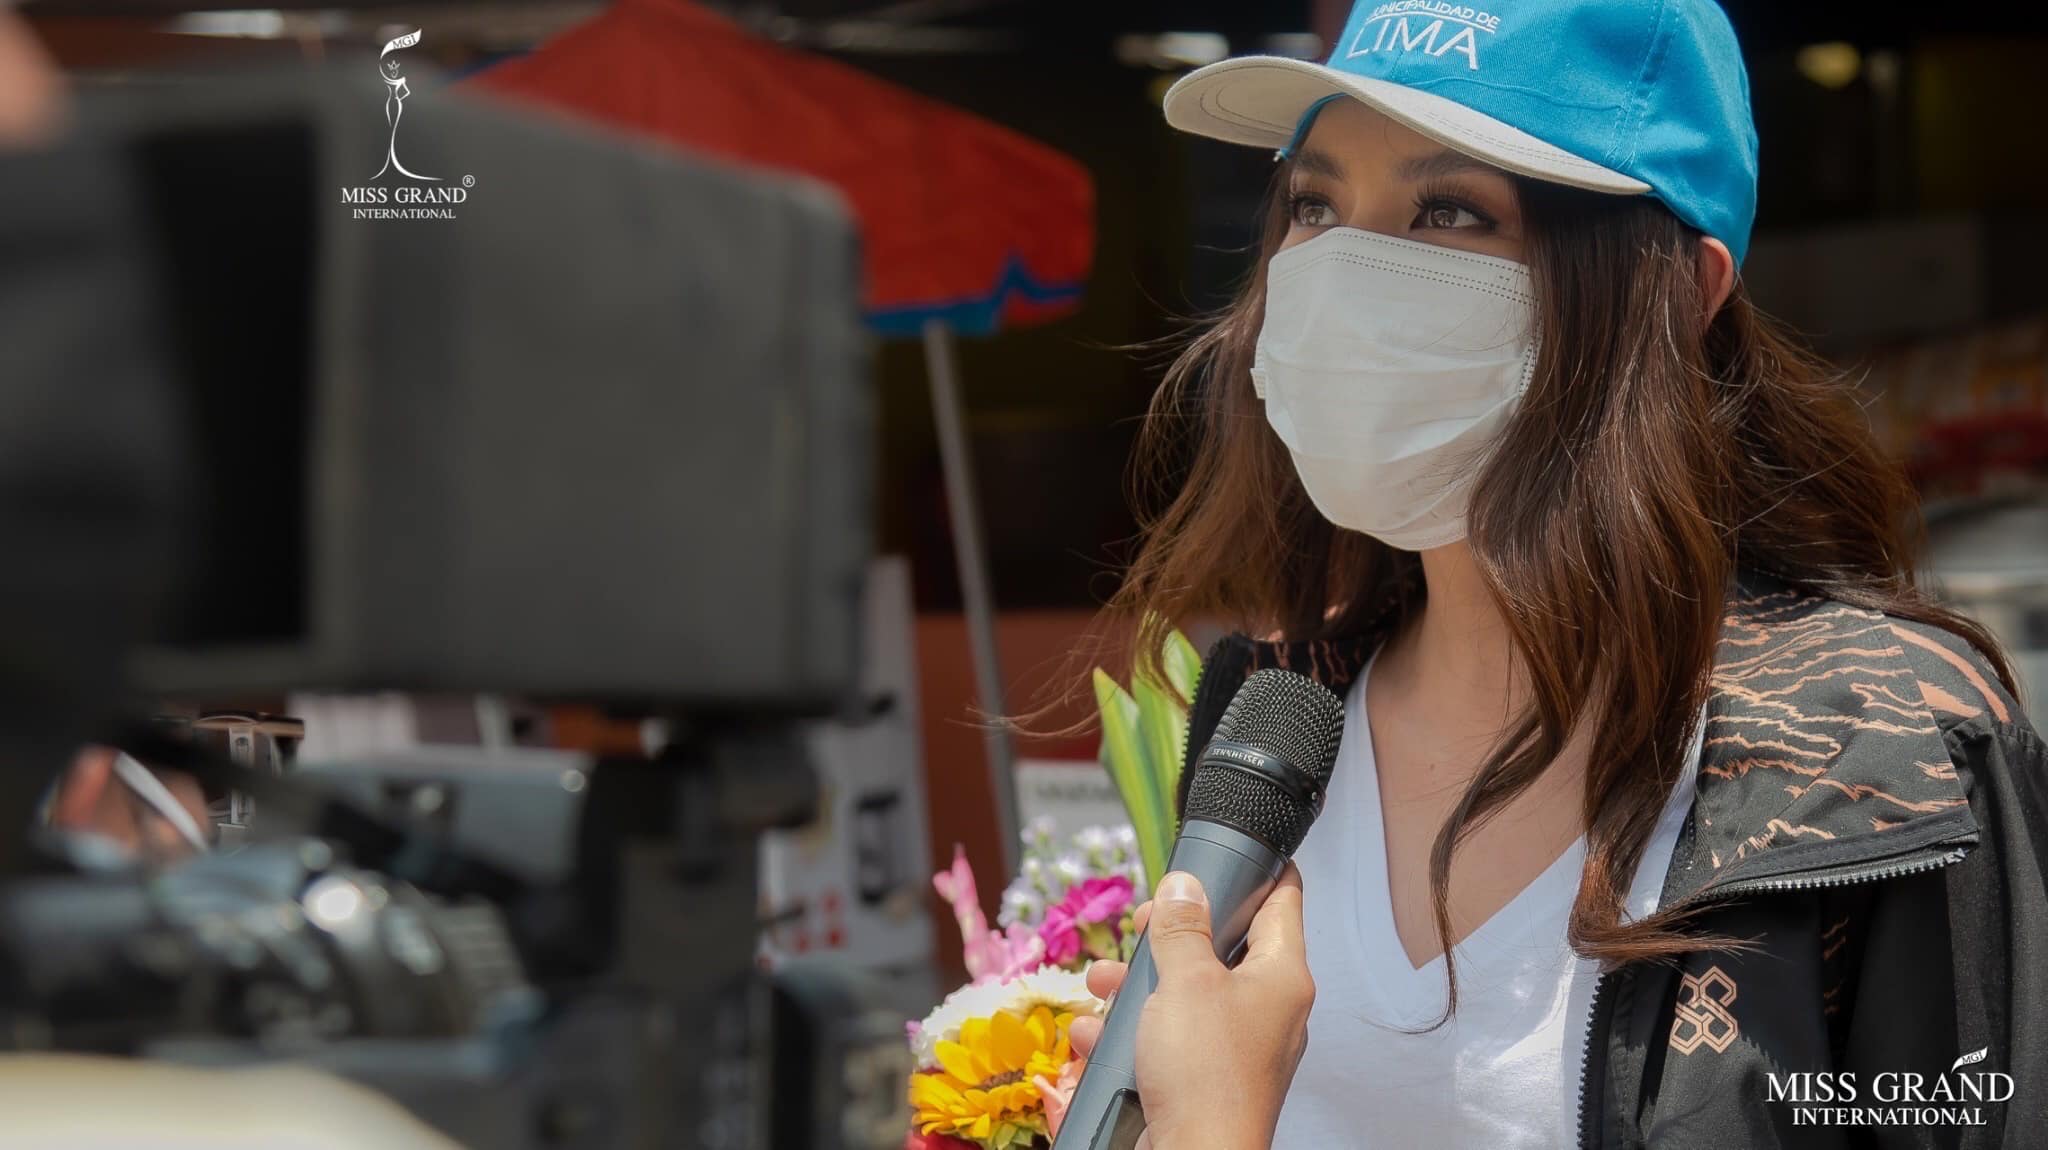 Hoa hậu Thùy Tiên và hoạt động thiện nguyện đầu tiên tại nước ngoài, hình ảnh đẹp vì quá thân thiện - ảnh 6